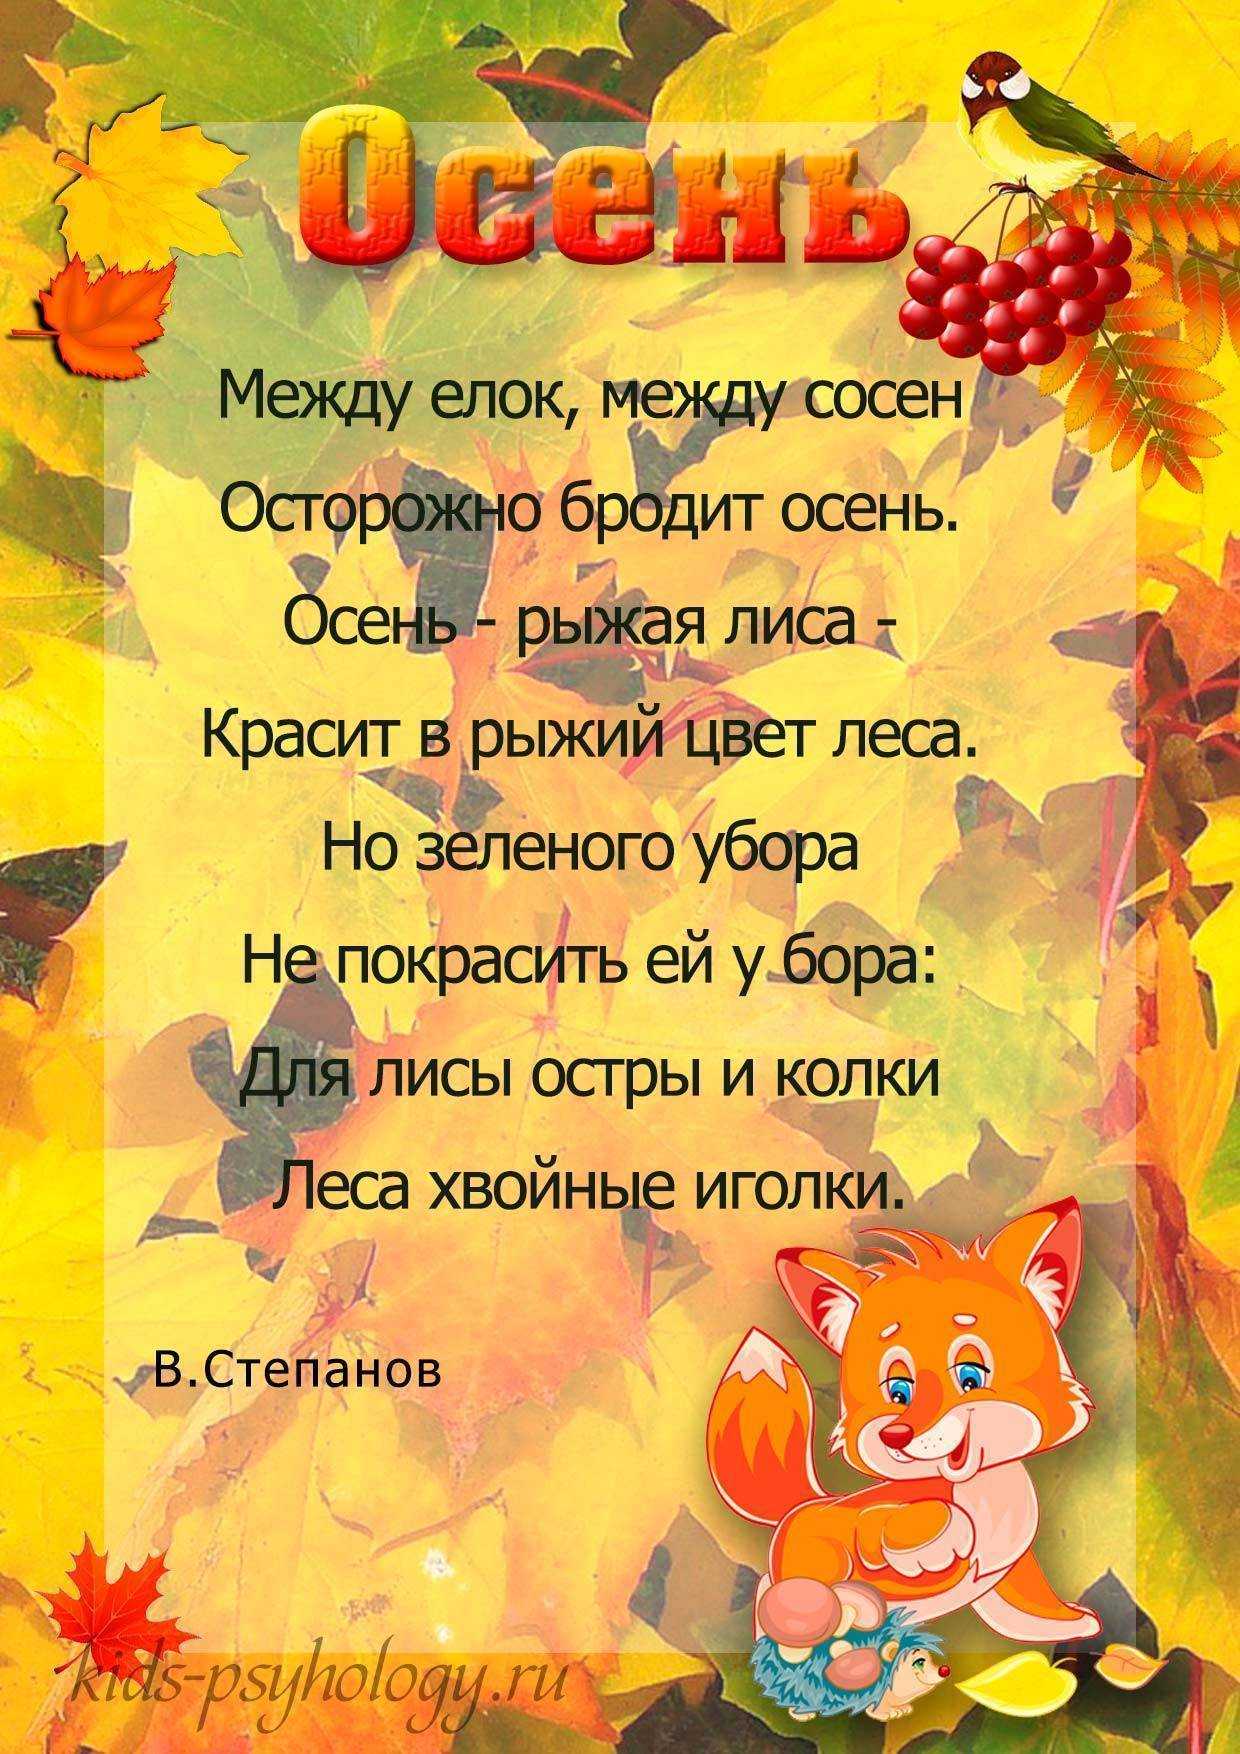 Стихи агнии барто для детей тексты самых популярных стихотворений - tarologiay.ru